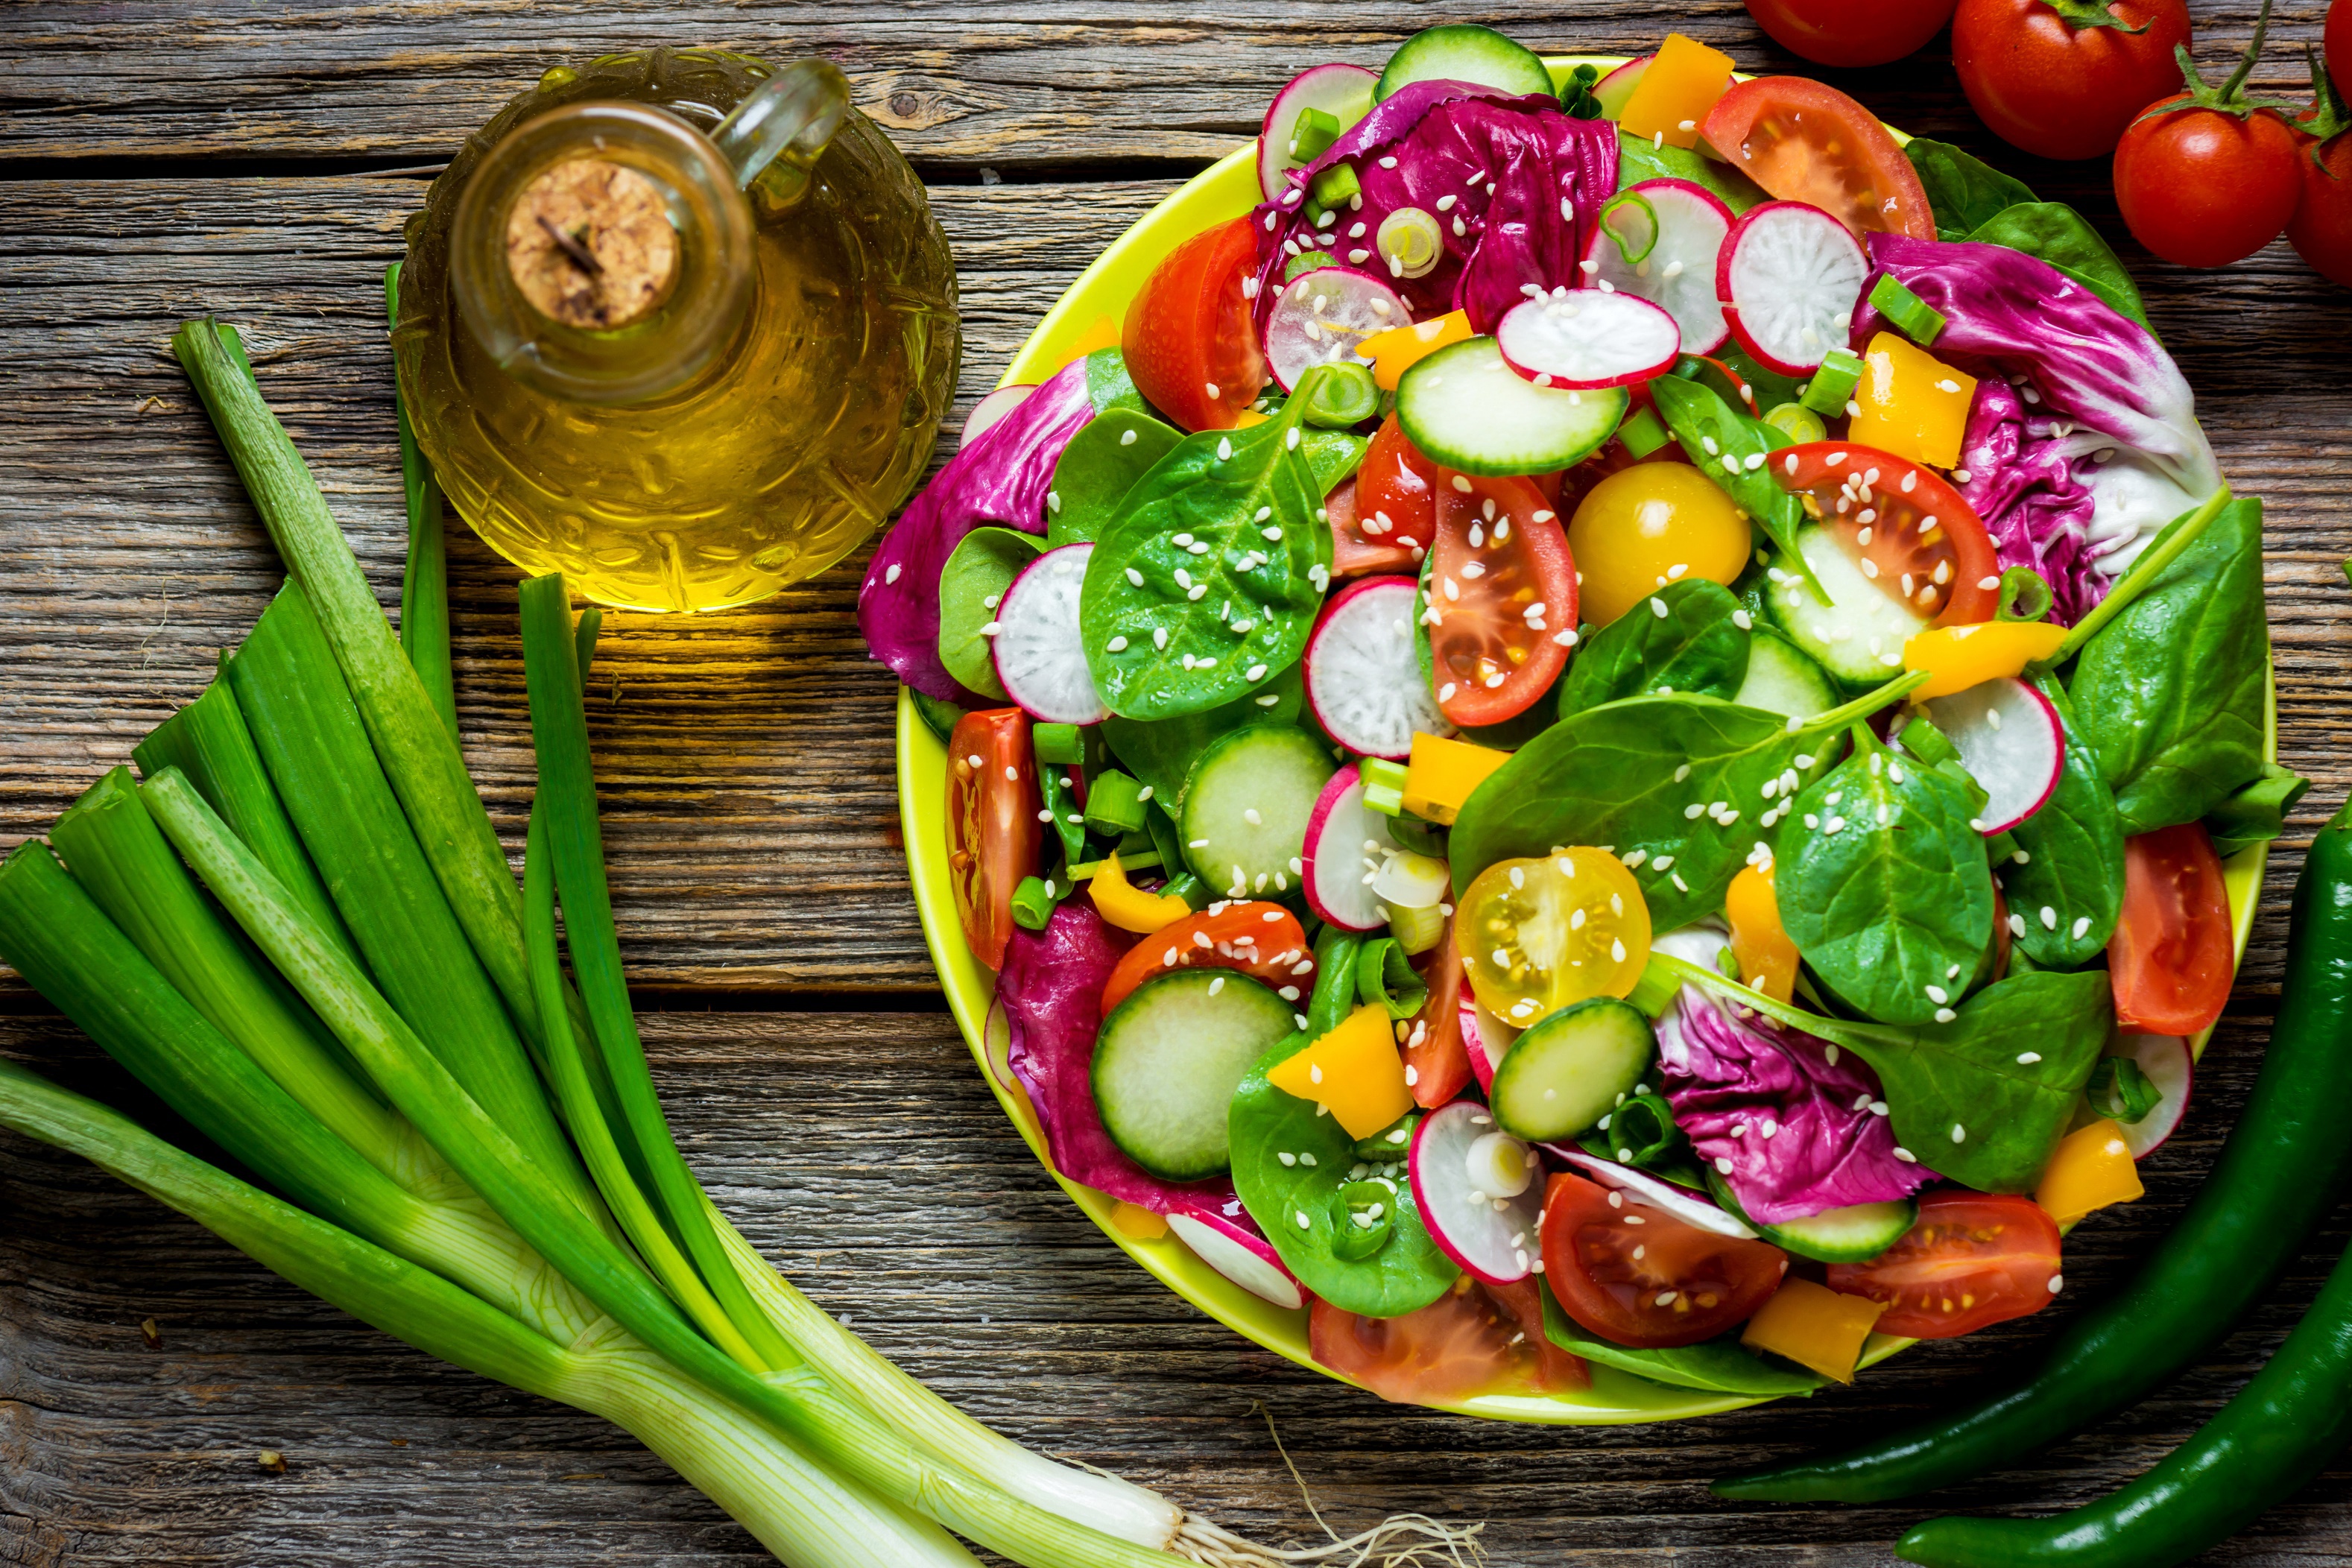 Постные блюда из овощей. Овощи и зелень. Овощи на столе. Овощной салат. Свежие овощи и зелень.